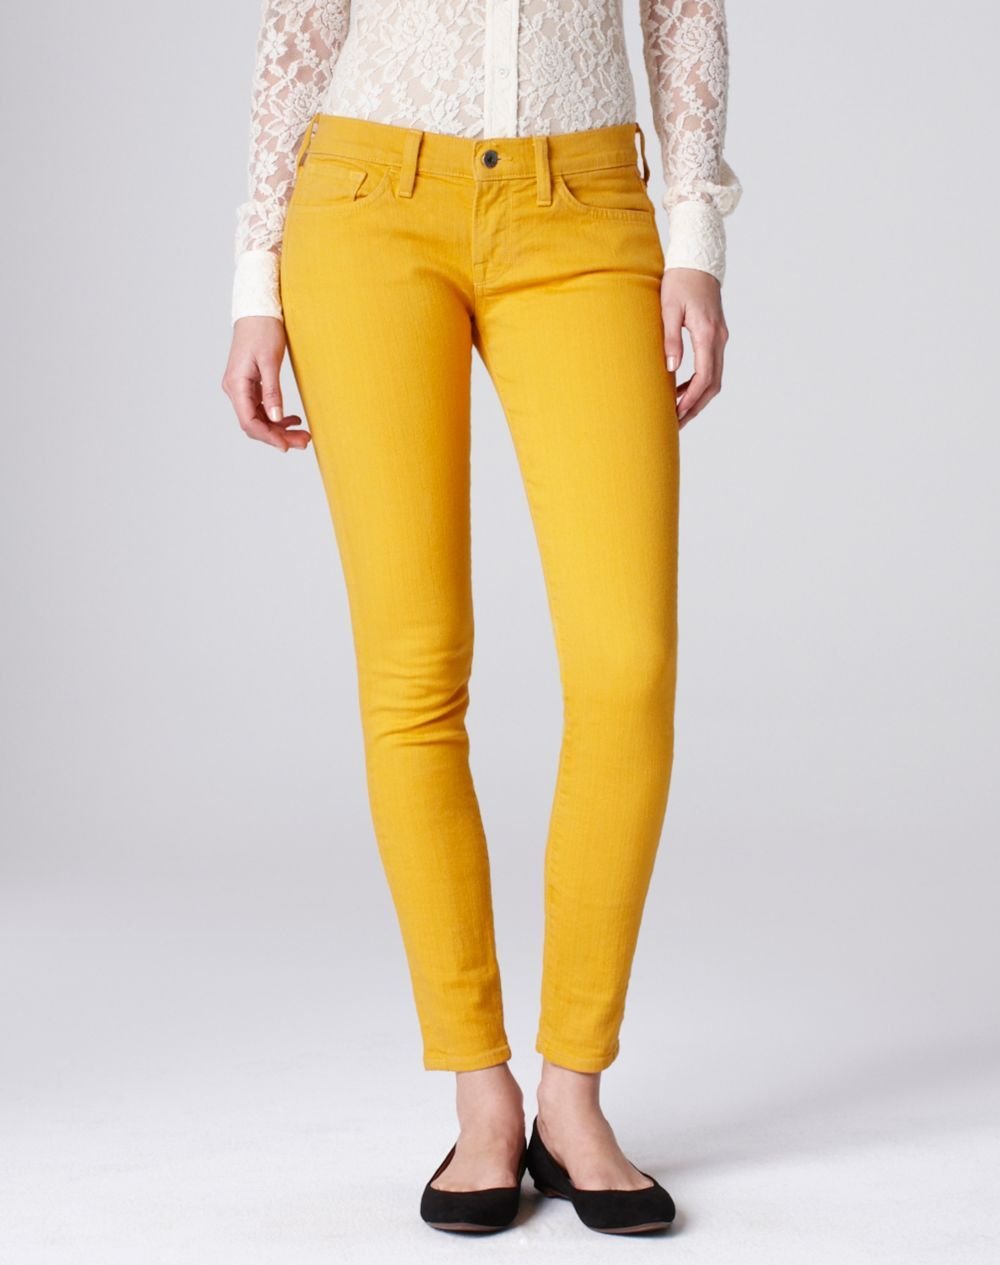 Горчичные джинсы женские. Желтые скинни. Цветные джинсы Катон. Горчичные джинсы